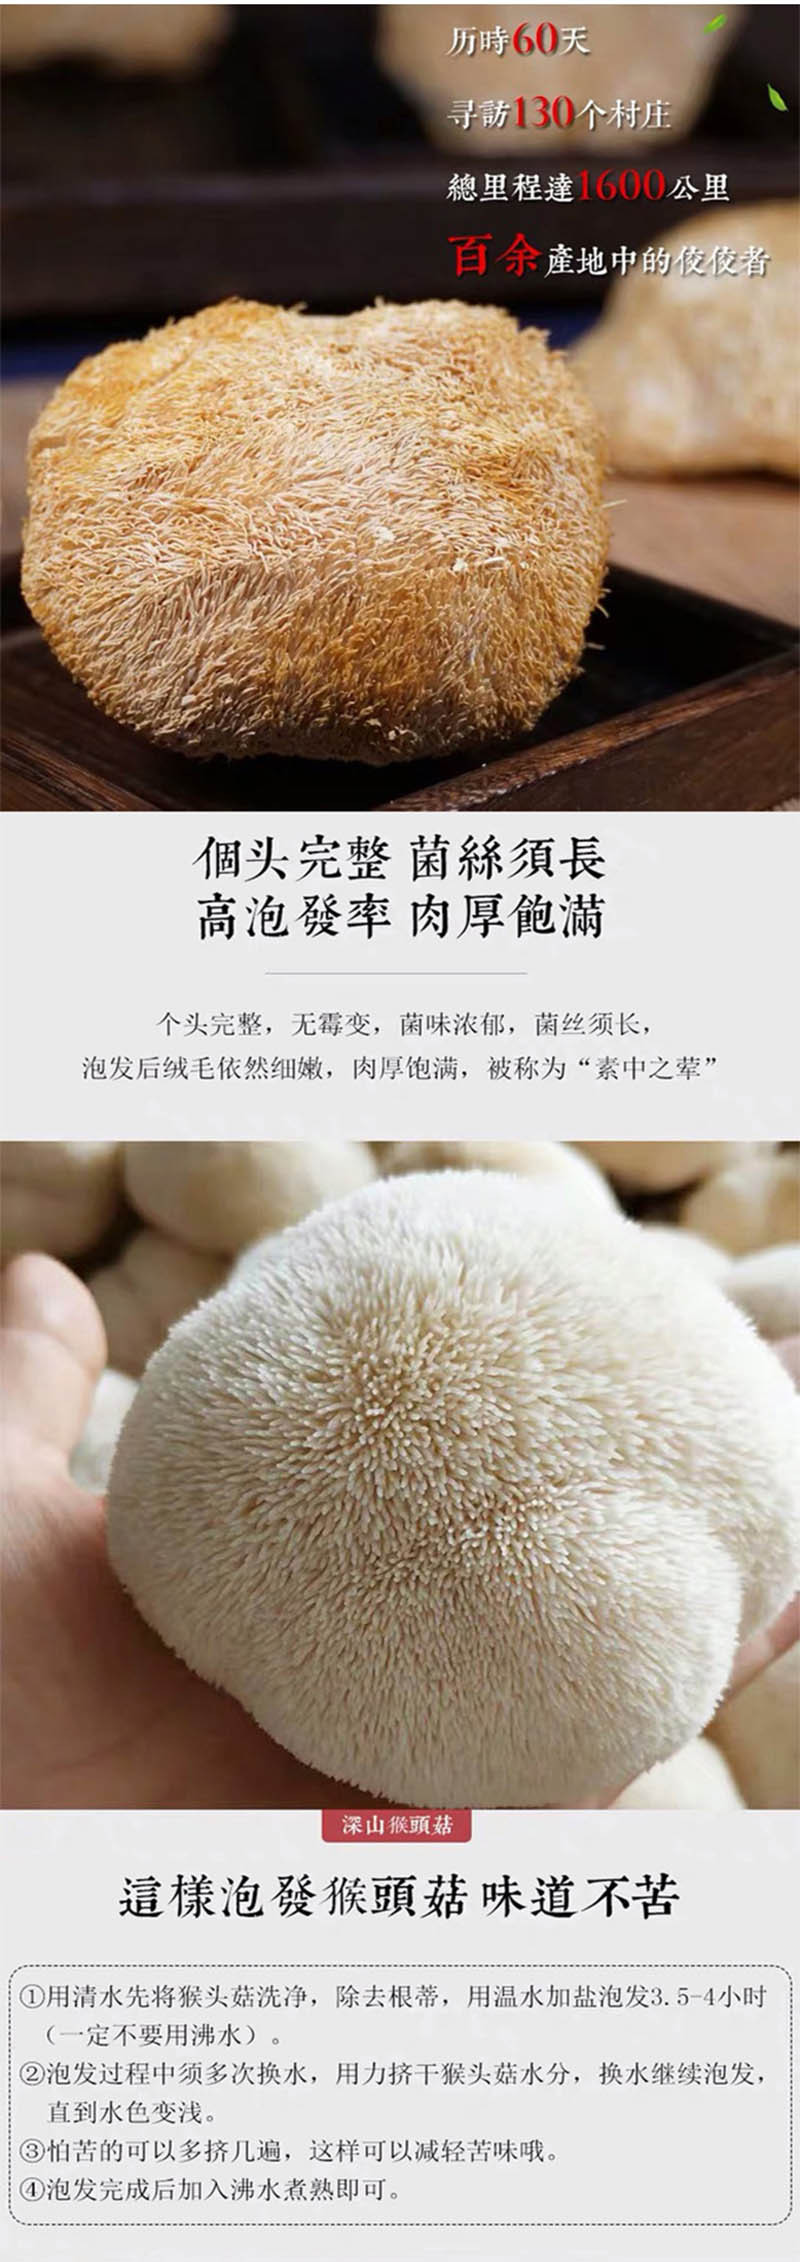  手绘小镇 洛阳农品 猴头菇250g嵩县农家特家原生态有机菌菇山珍干货